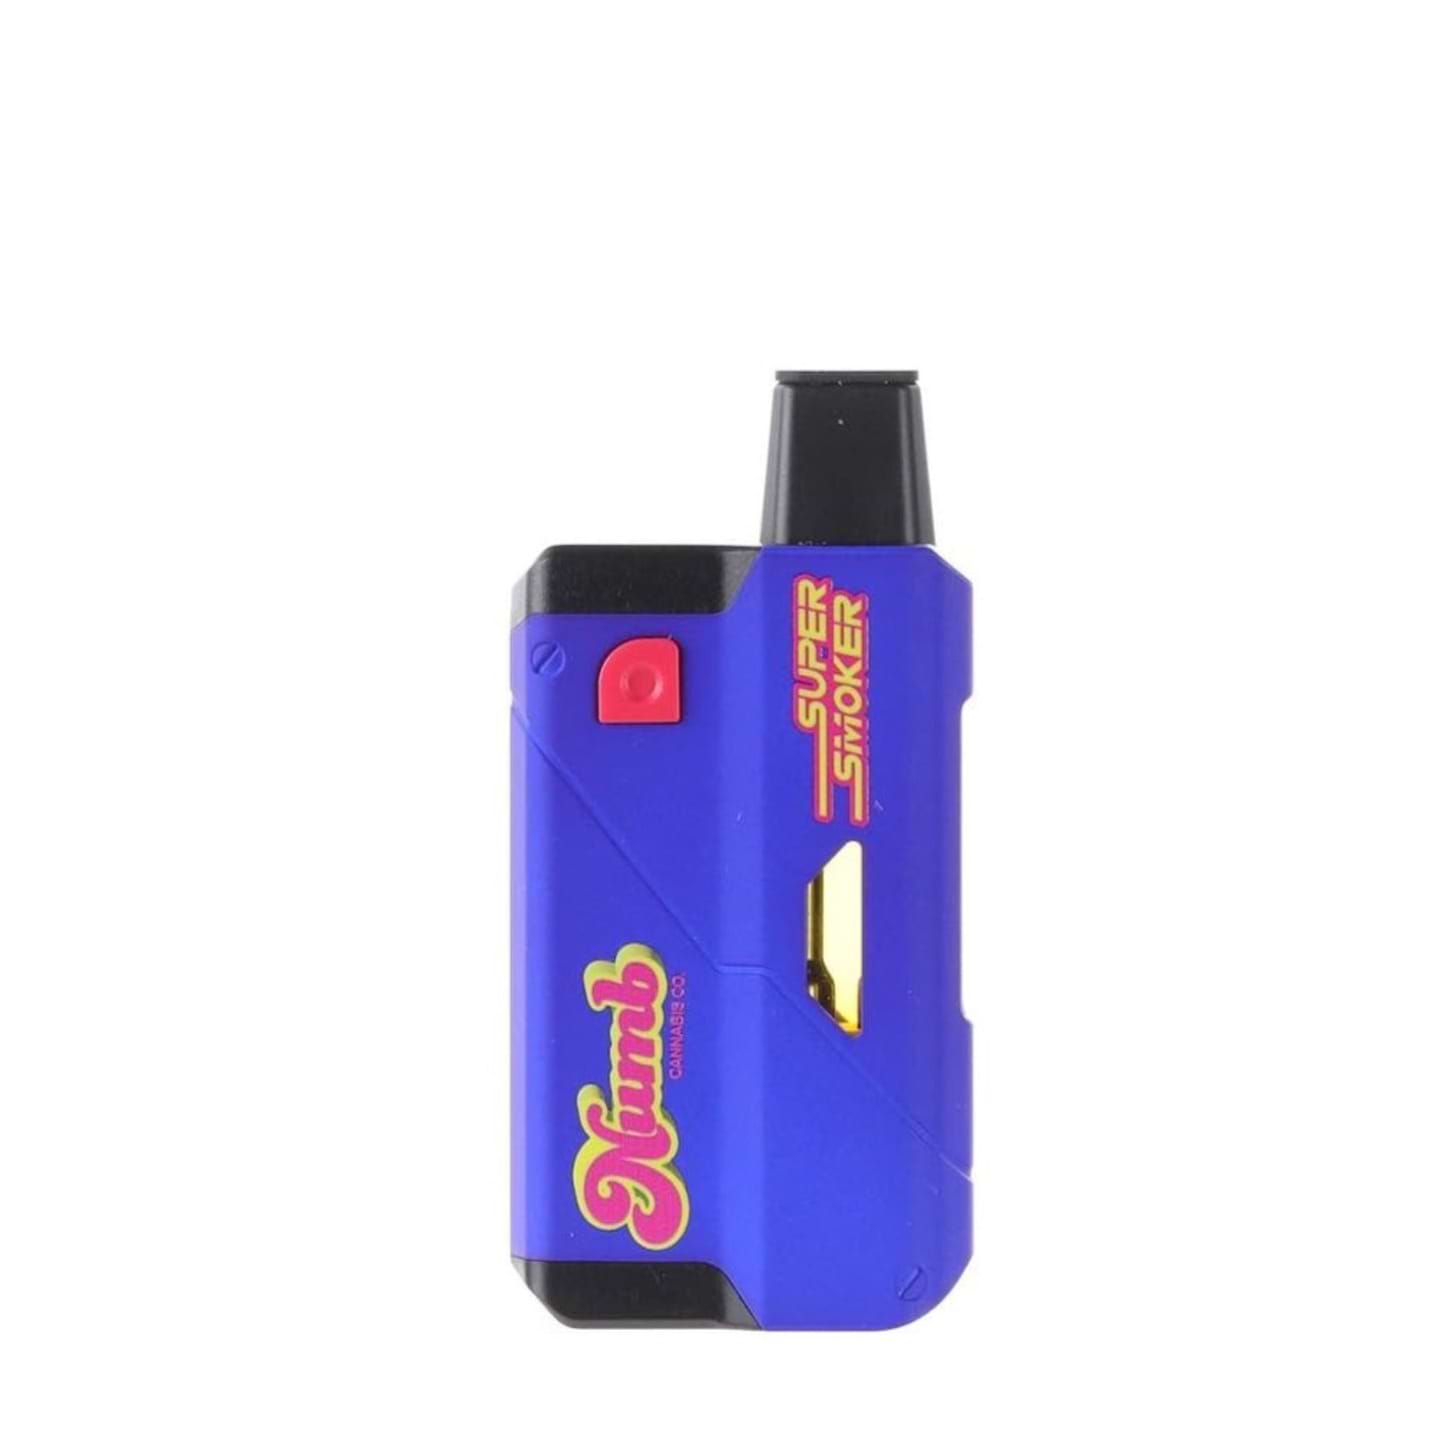 Super Smoker THC-A + THC-P Vaporizer - 5.5g